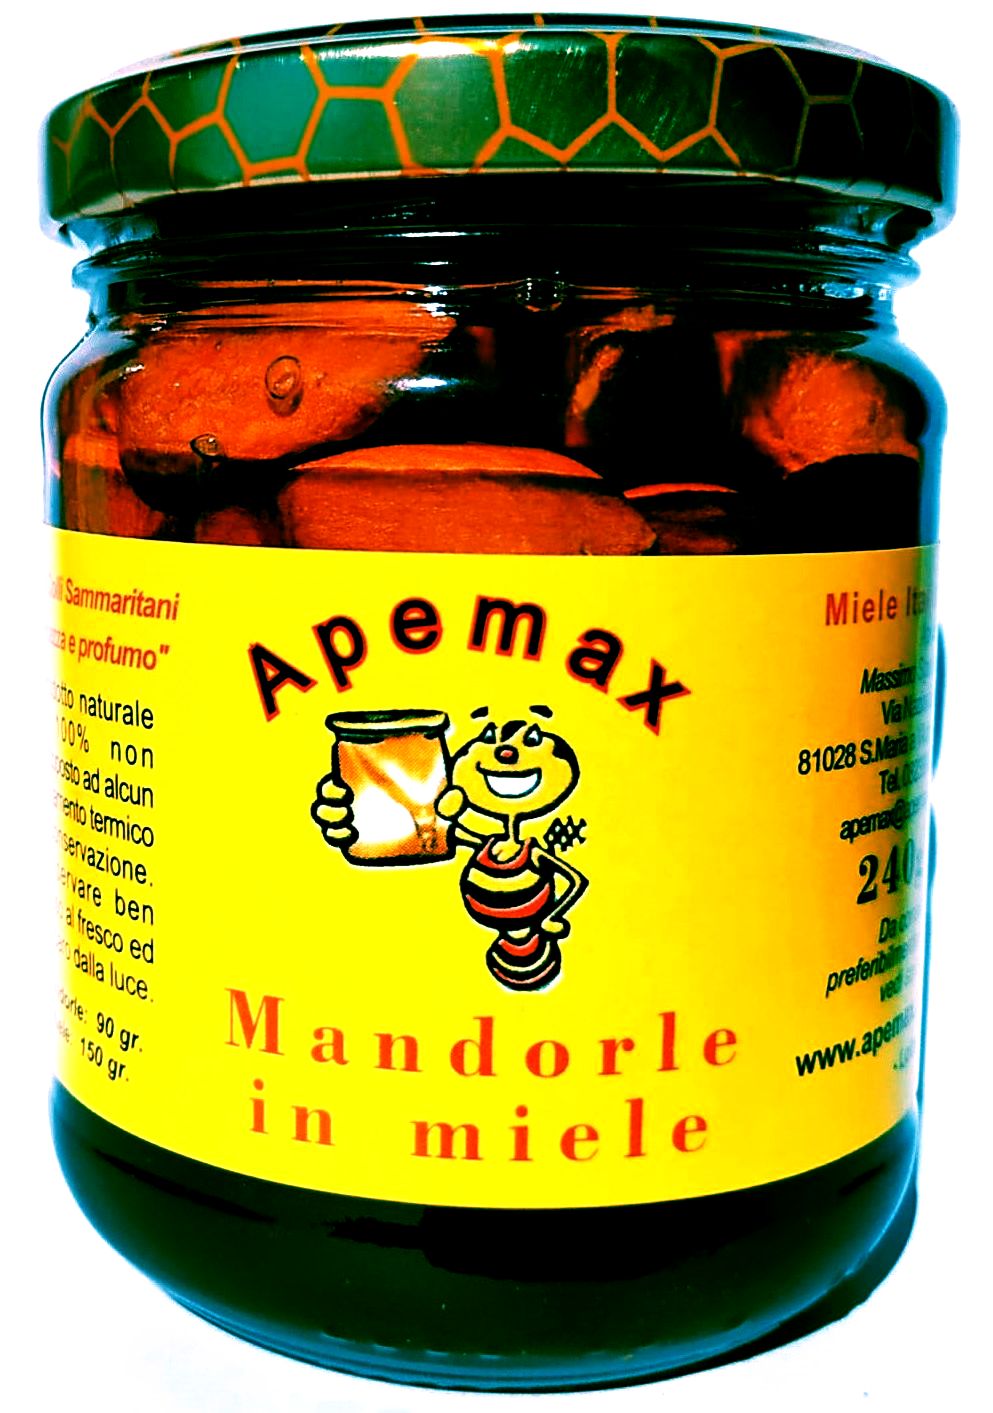 Mandorle in miele, Miele, Campania, Prodotti tipici, vendita miele online, cucina, cibo, apicoltura, api